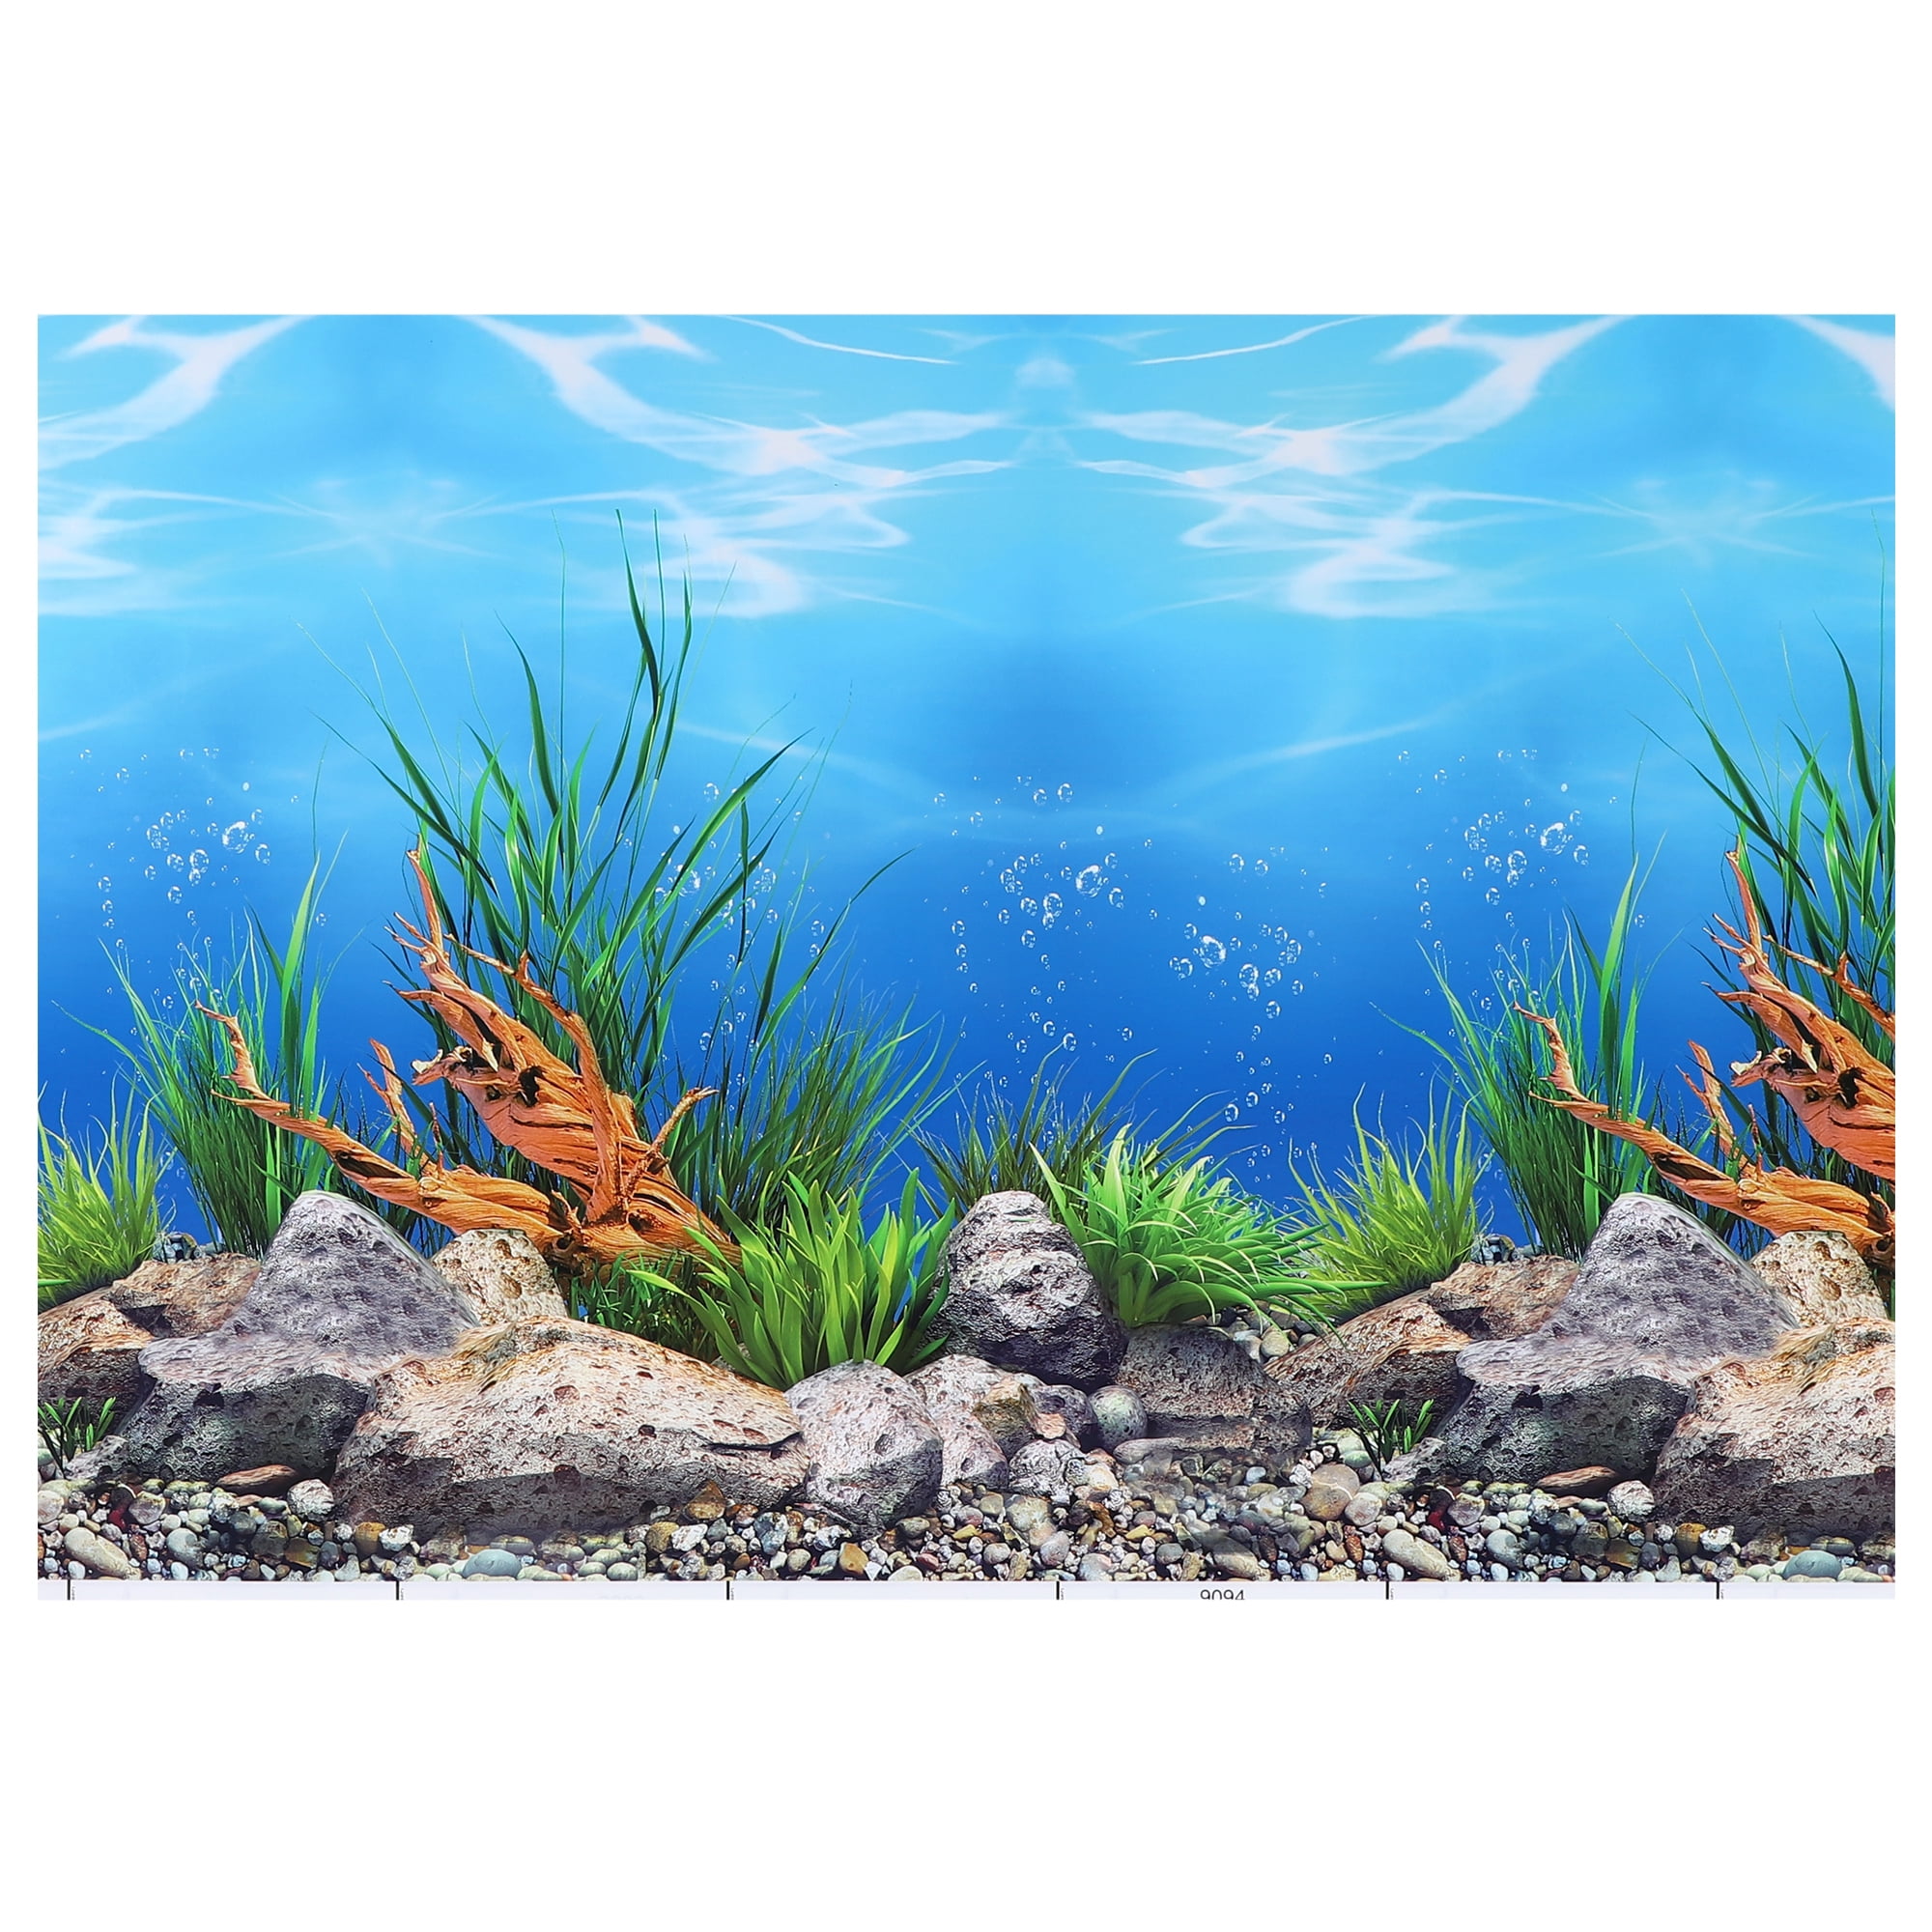 Unique Bargains Aquarium Background Poster Double-sided Fish Tank  Background Decorative Paper Sticker 24.41x19.69